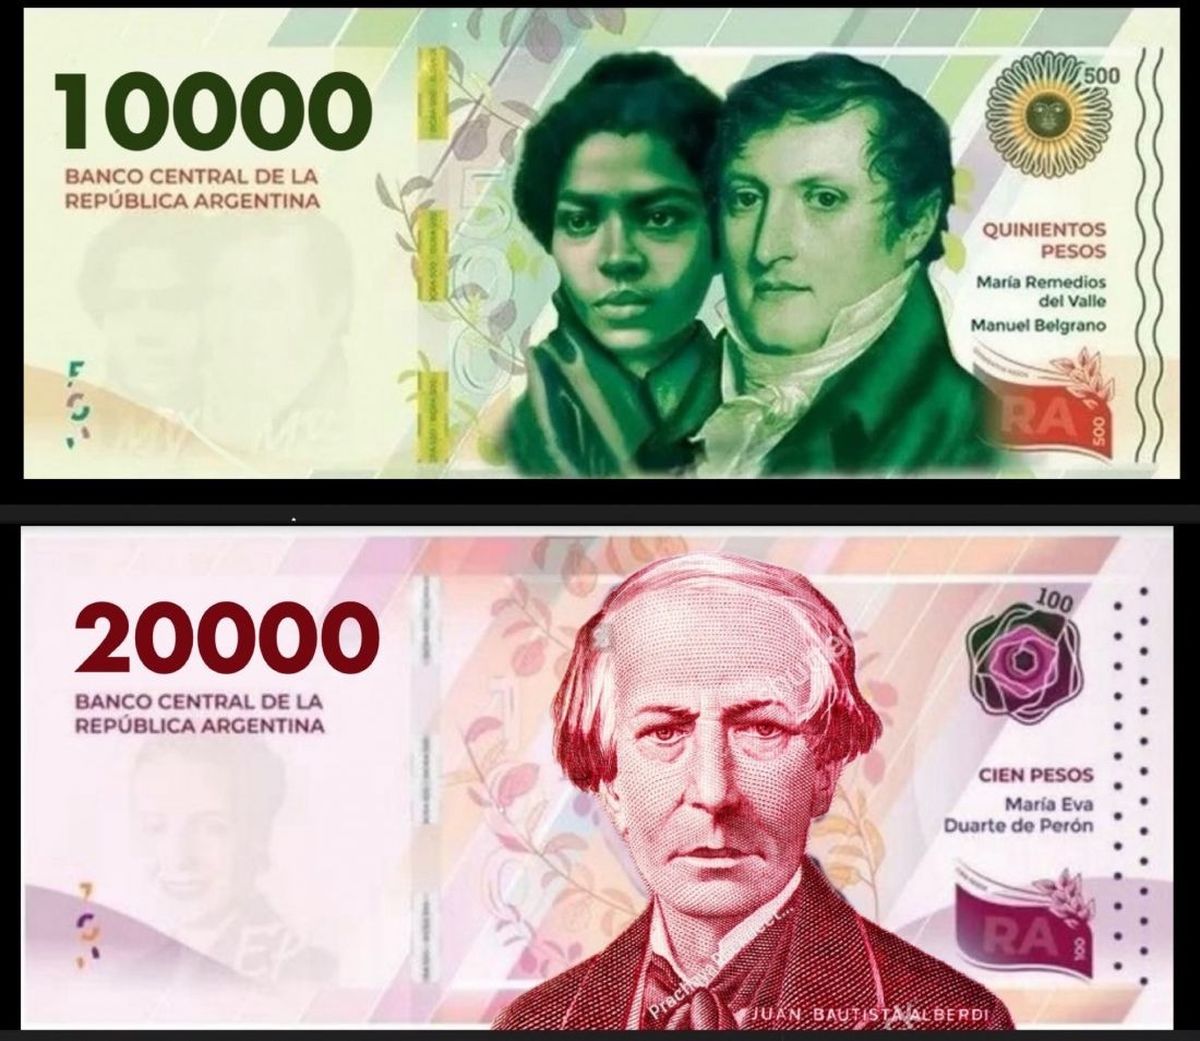 Los billetes emitidos por el BCRA de $ 10.000 contará con María Remedios del Valle y Manuel Belgrano y el de $ 20.000 tendrá al prócer Juan Bautista Alberdi, inspirador de la Constitución Nacional de 1853